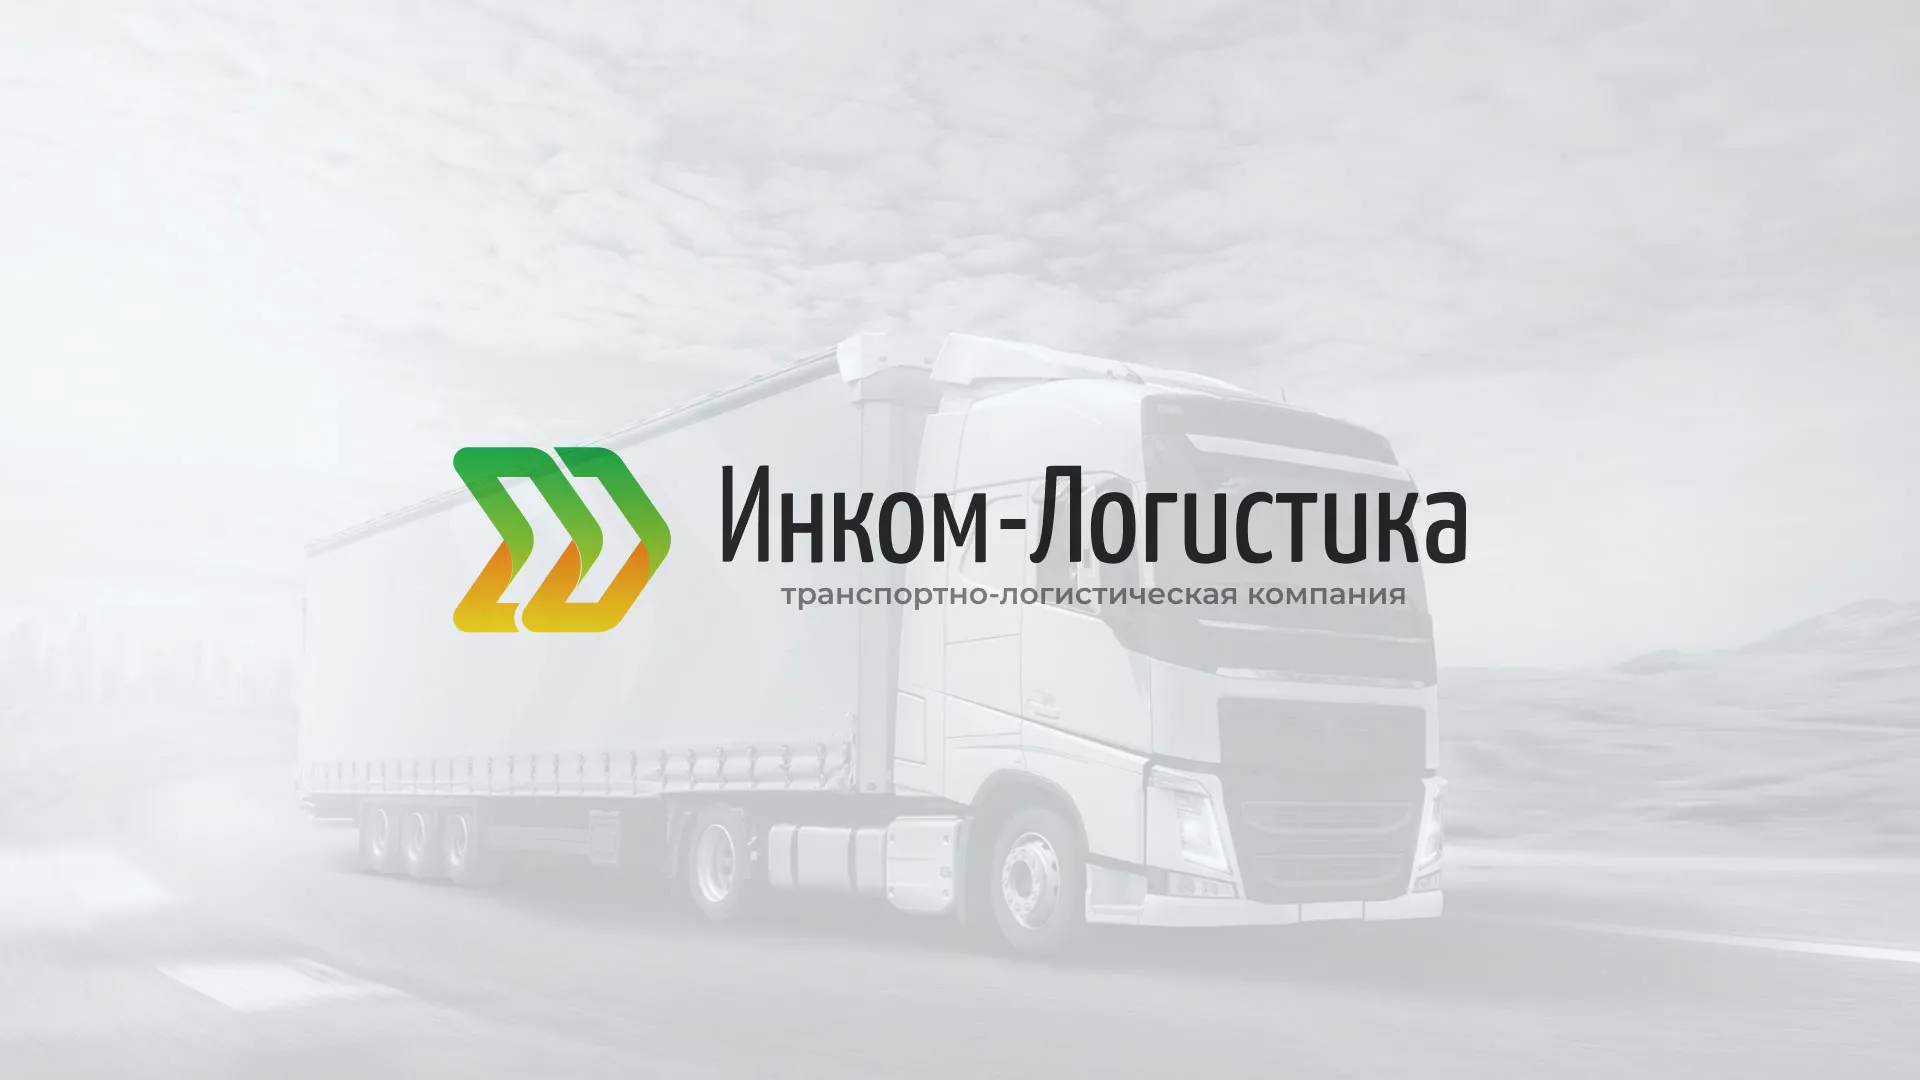 Разработка логотипа и сайта компании «Инком-Логистика» в Кизляре